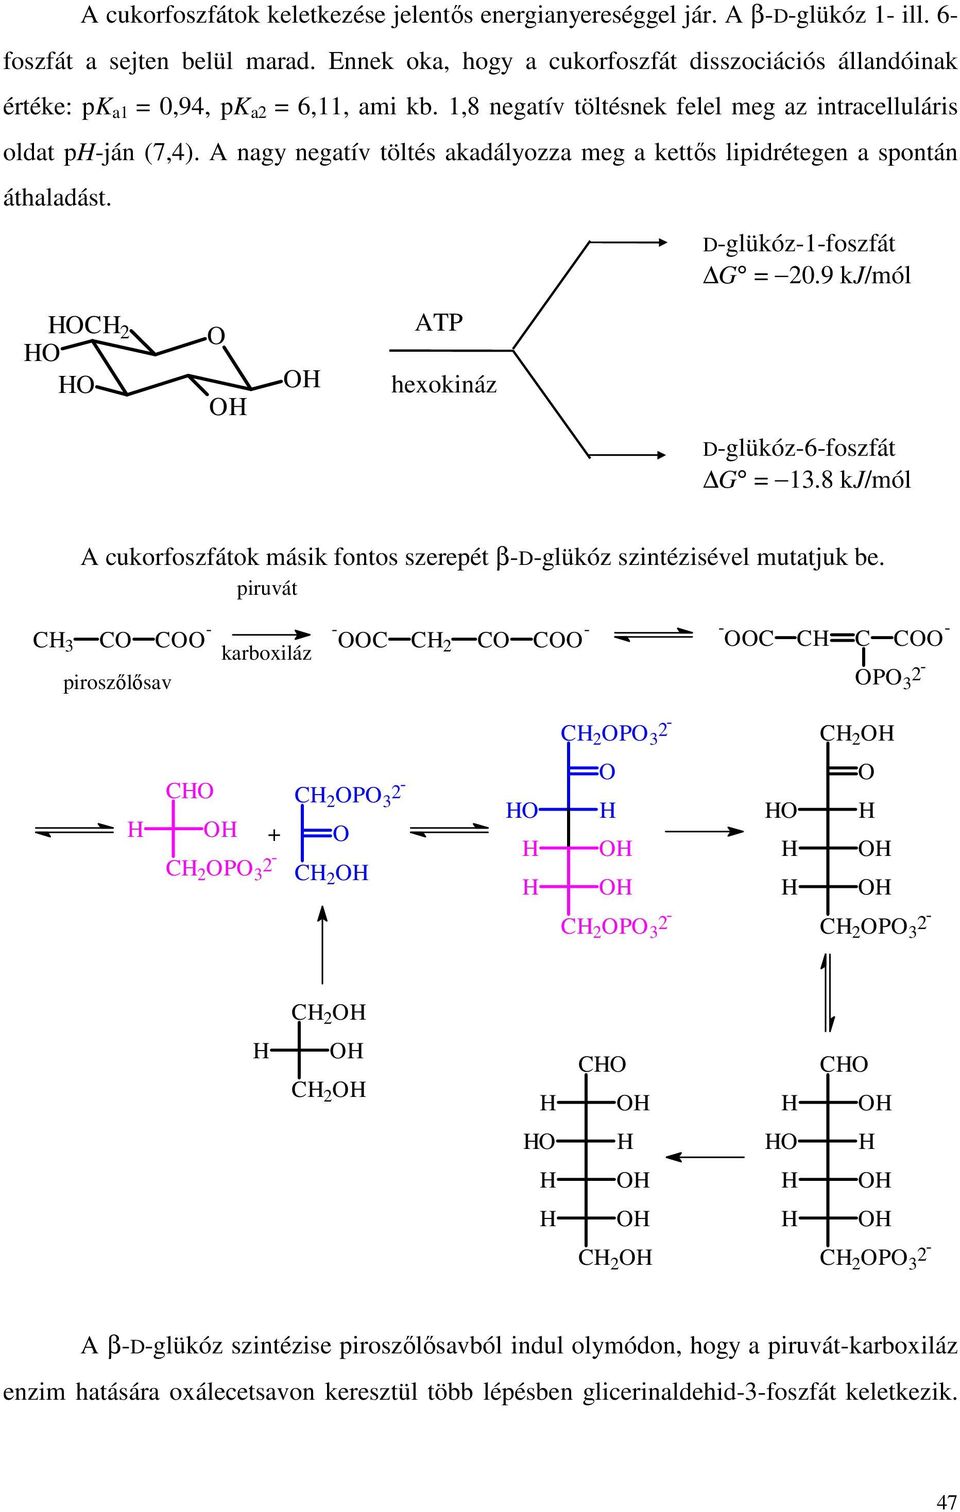 A nagy negatív töltés akadályozza meg a kettıs lipidrétegen a spontán áthaladást. C 2 ATP hexokináz D-glükóz-1-foszfát G = 20.9 kj/mól D-glükóz-6-foszfát G = 13.